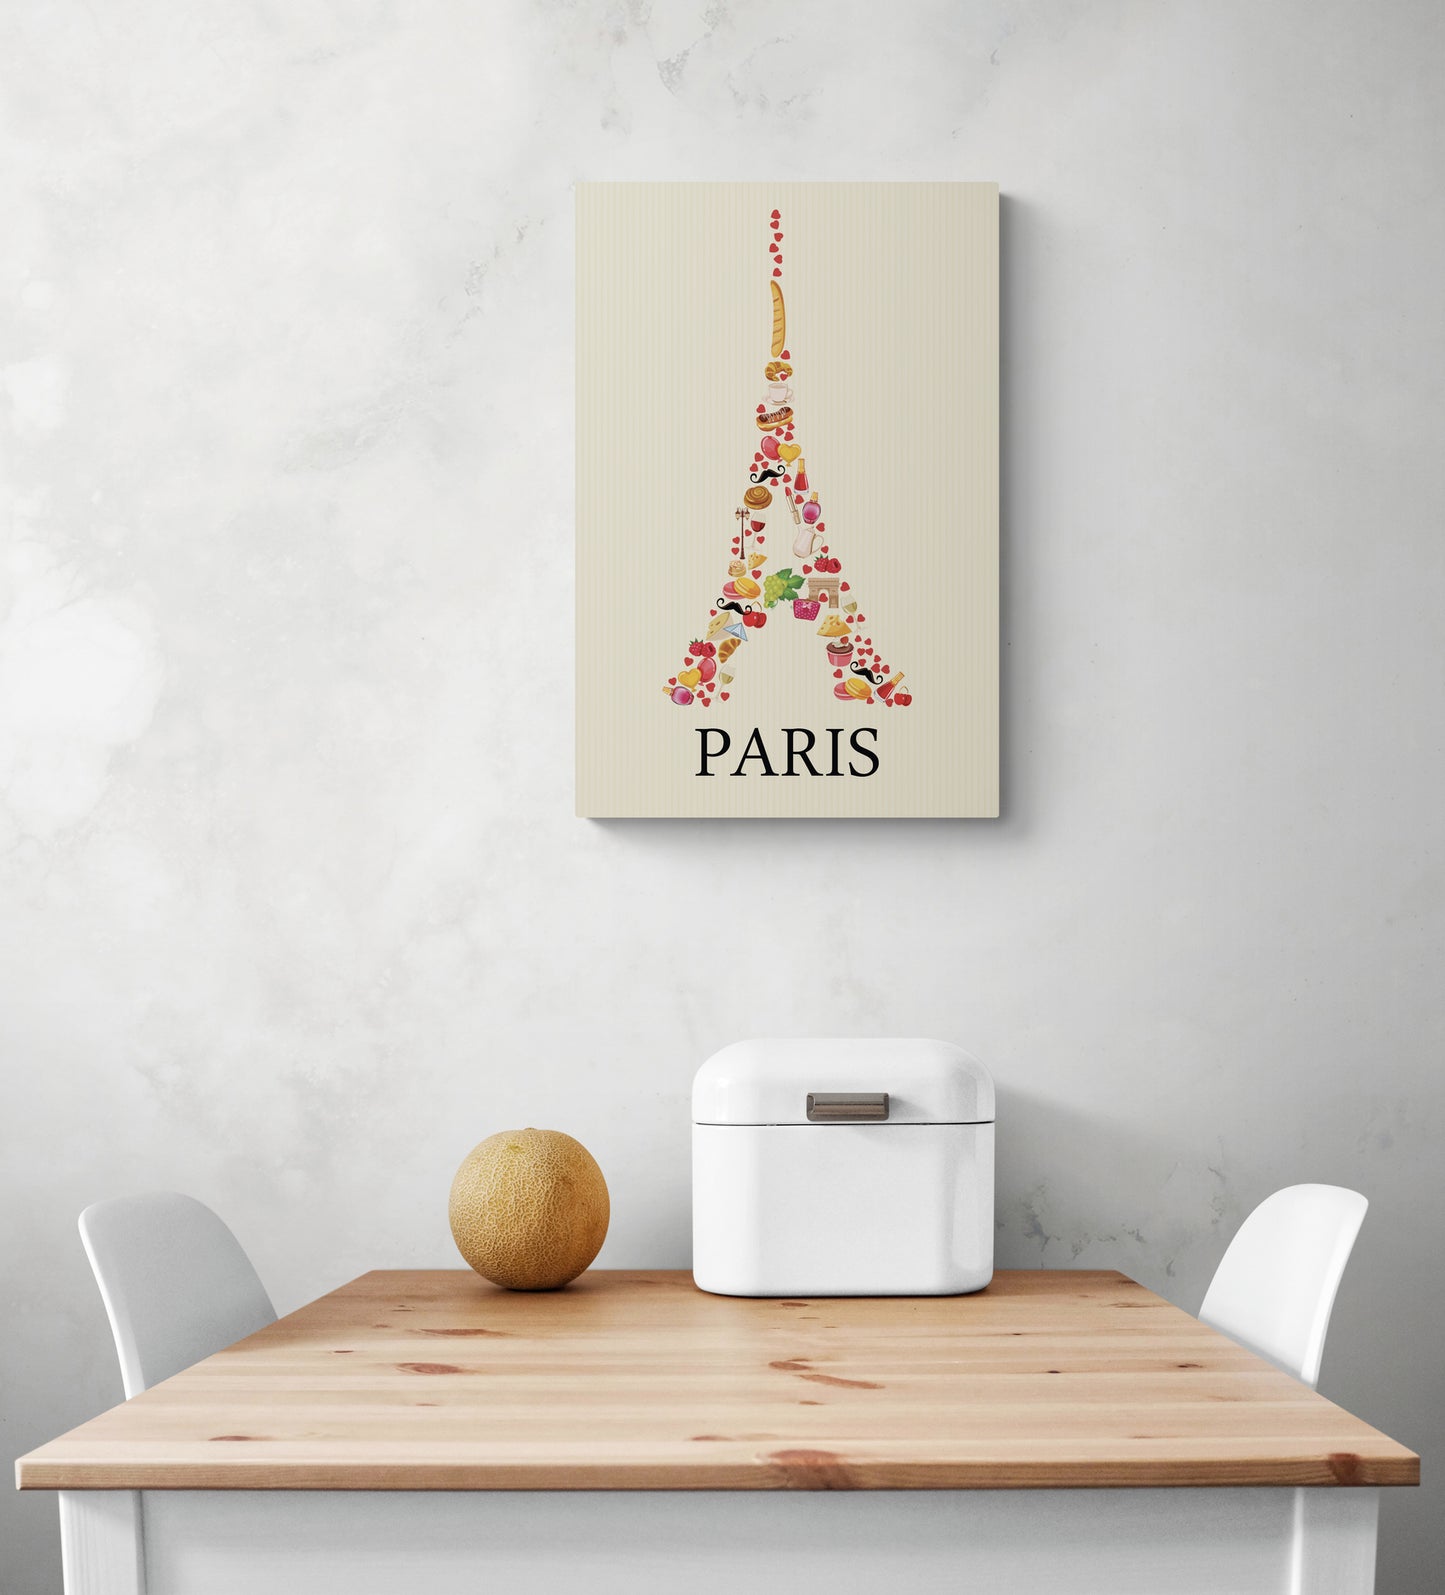 Sur un mur est accroché un tableau de la tour Eiffel, Les couleurs sont douces on peut voir des dessins de viennoiseries. La photo montre également une table en bois et deux chaises blanches qui semblent être disposées de manière à créer un espace accueillant.